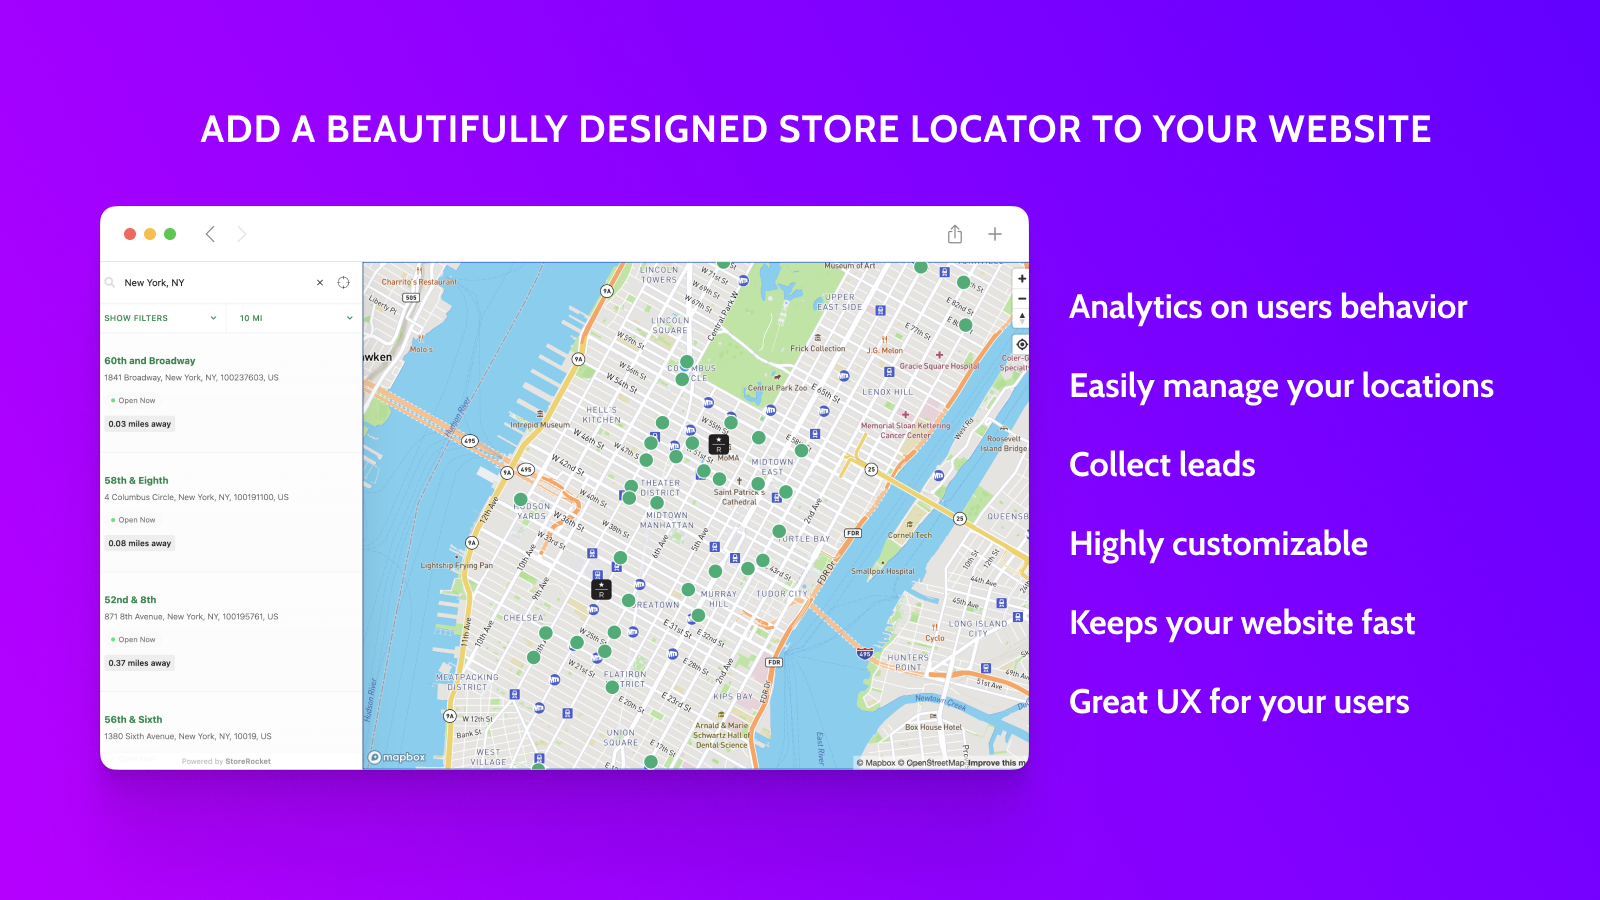 Adicione um localizador de lojas lindamente projetado ao seu site!